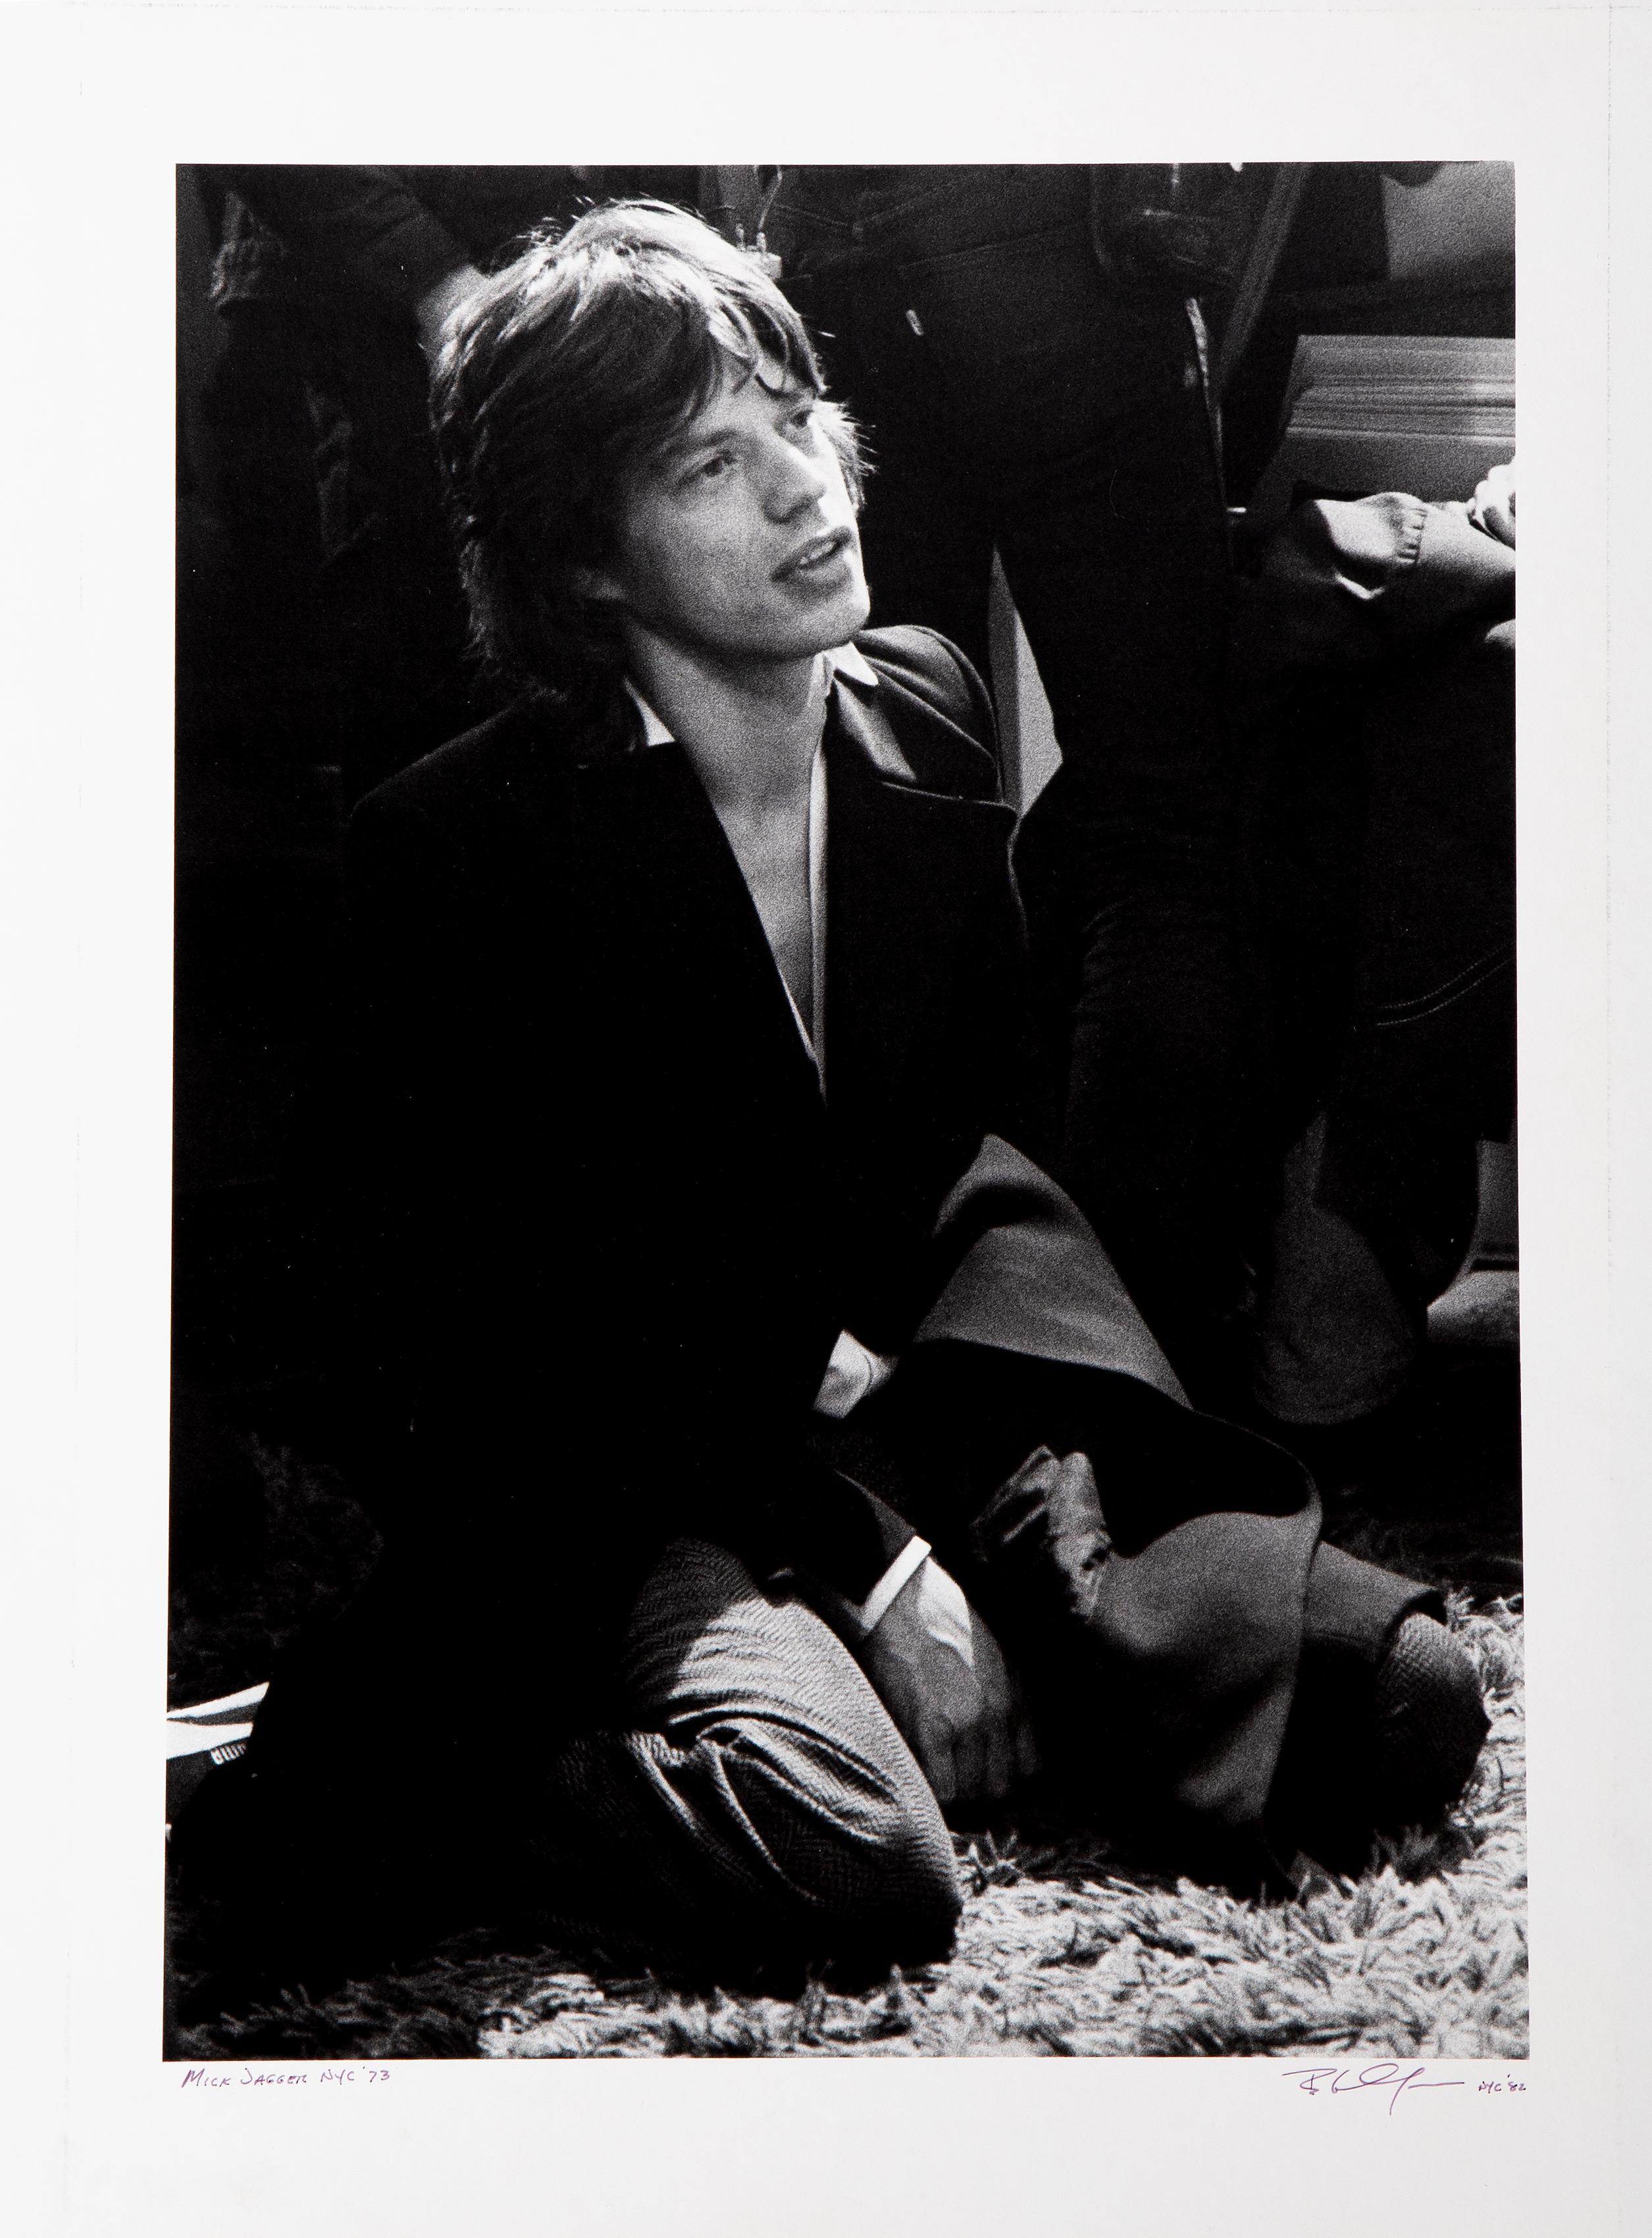 Mick Jagger
Bob Gruen, Amerikaner (1945)
Datum: 1973
Gelatinesilberdruck, auf Karton aufgezogen, signiert, betitelt und datiert mit Feder
Bildgröße: 16 x 11,5 Zoll
Größe: 20 x 16 Zoll (50,8 x 40,64 cm)